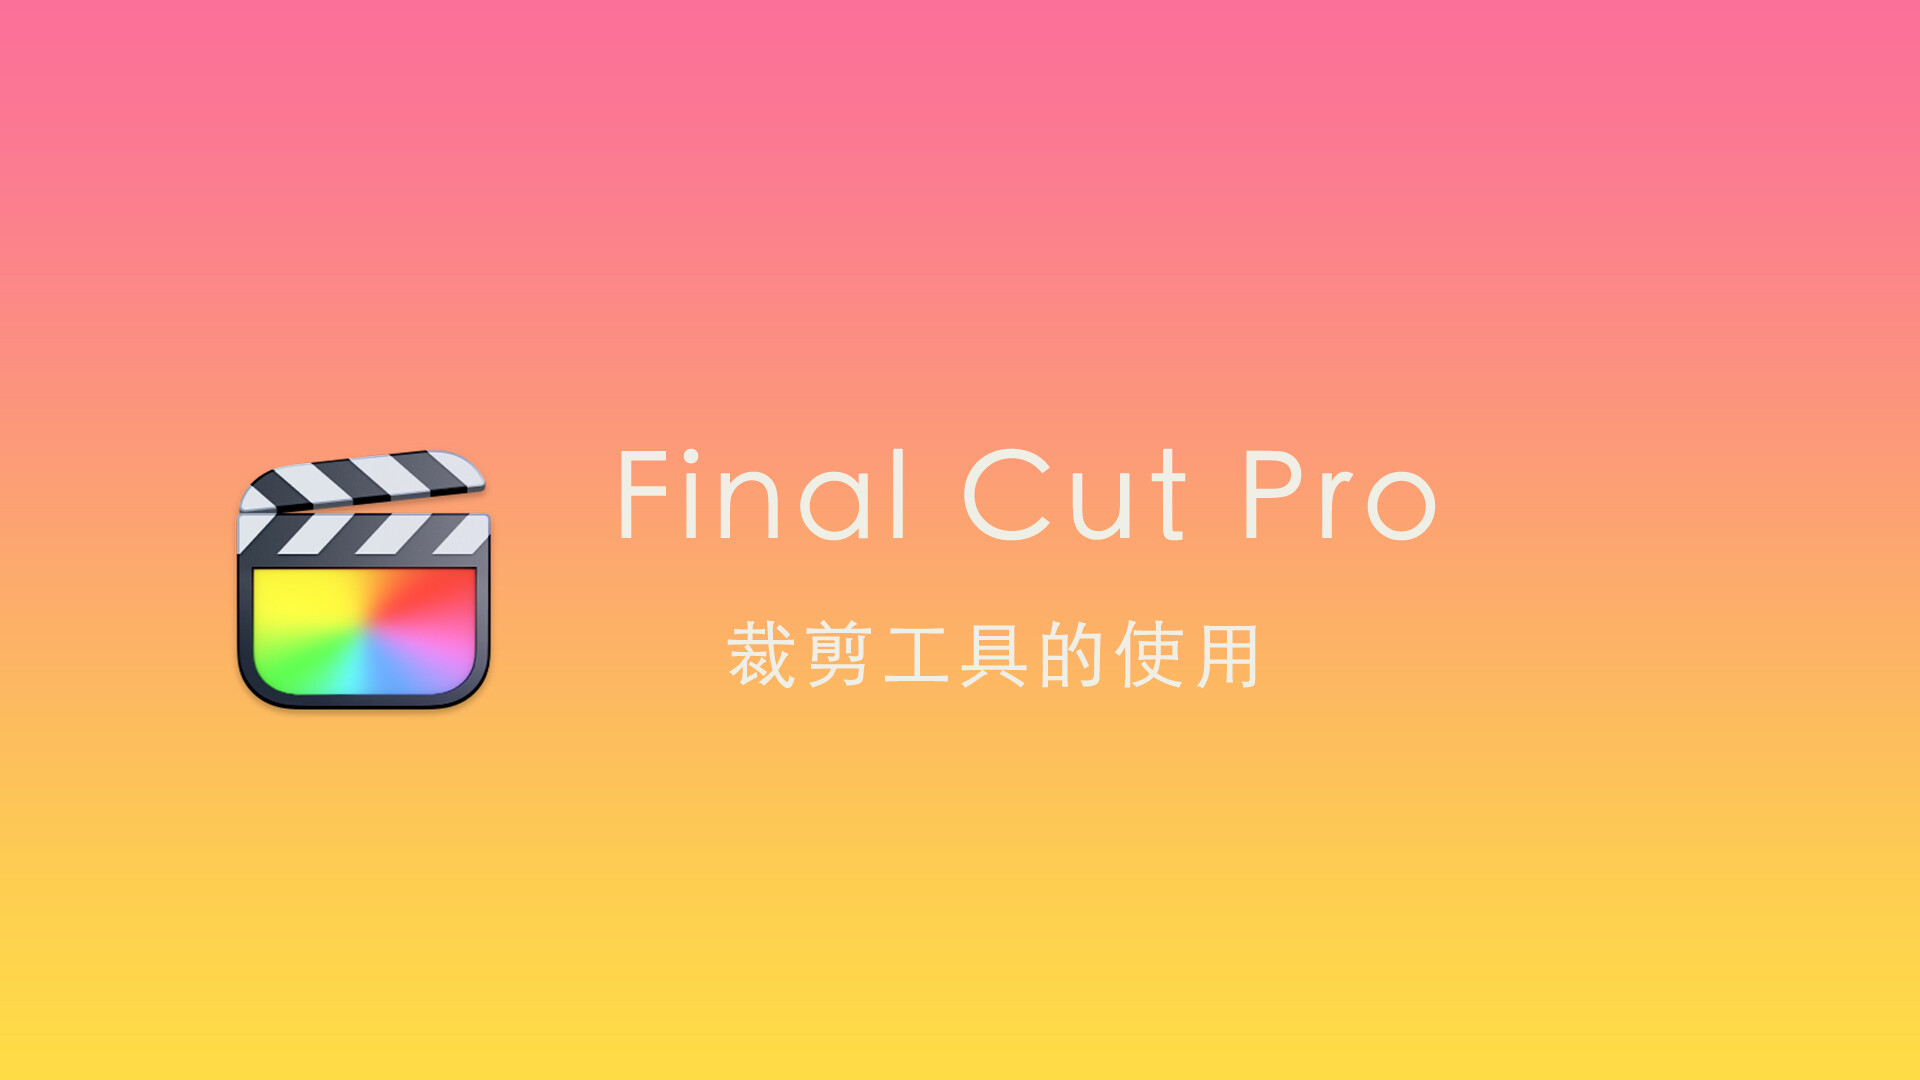 Final Cut Pro中文新手教程 (26) 裁剪工具的使用